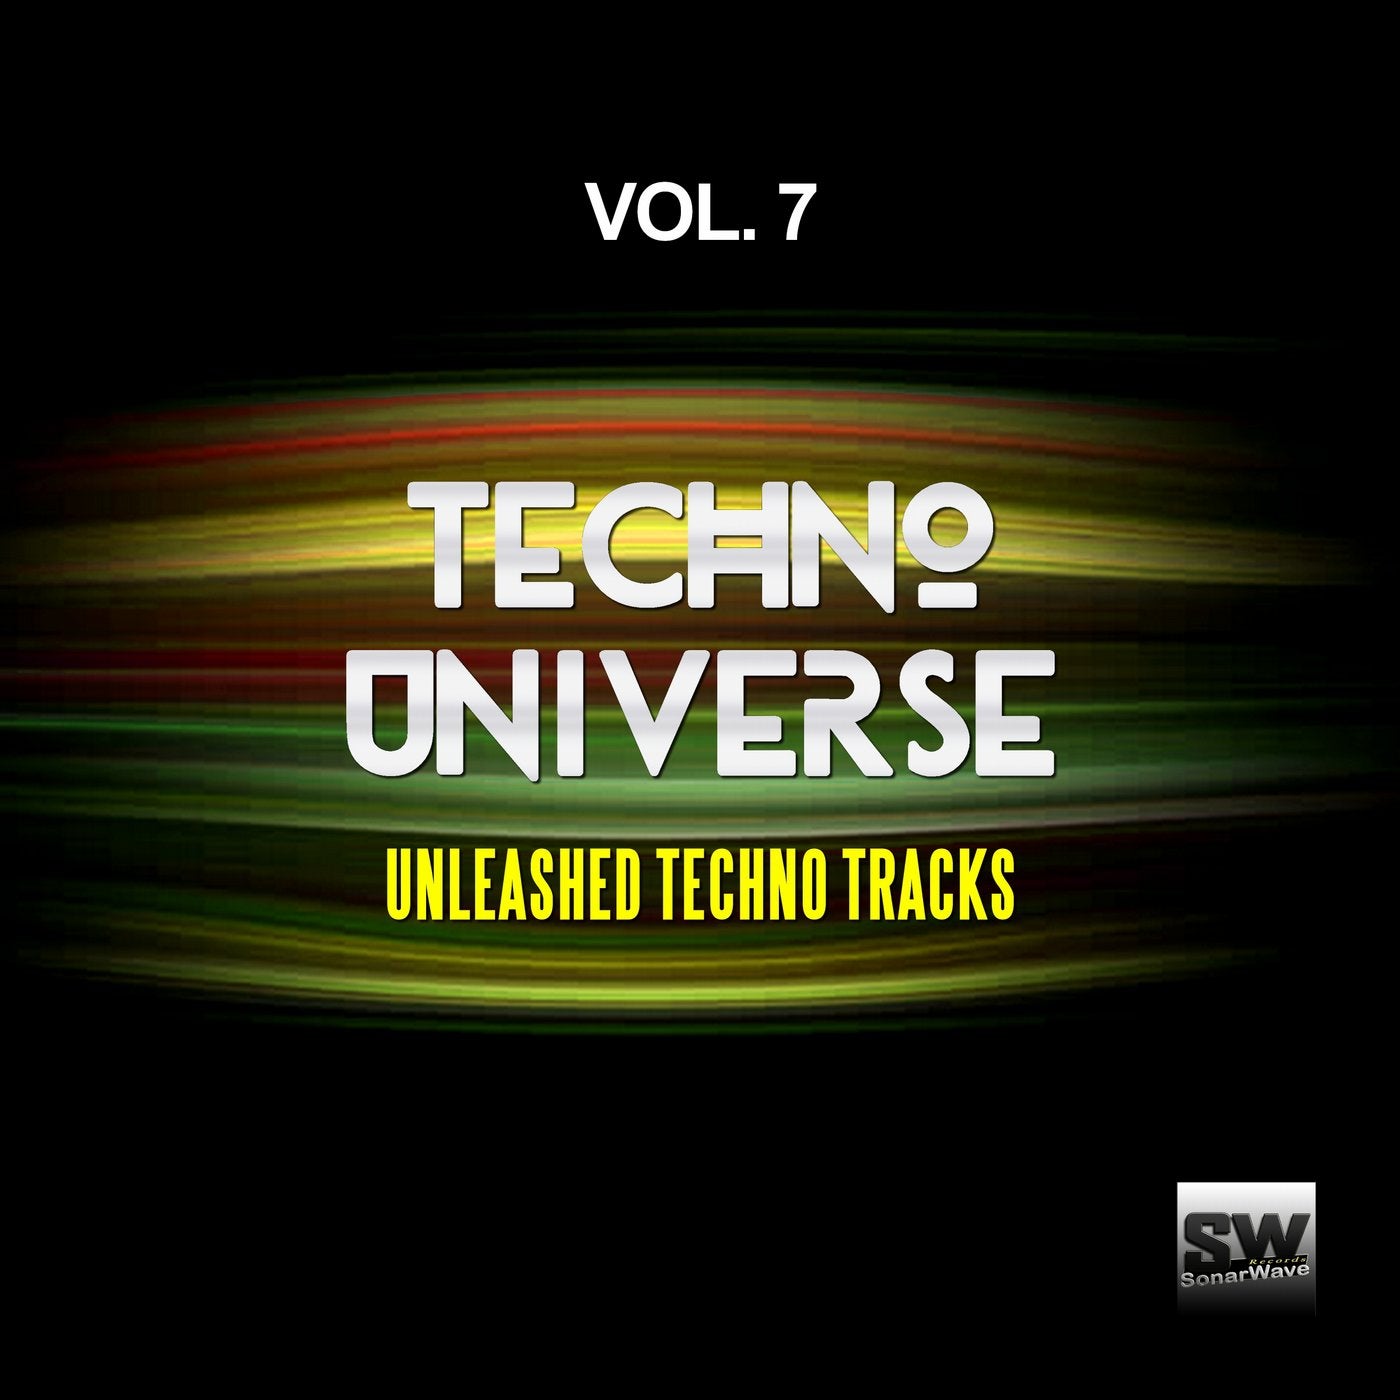 Techno Universe, Vol. 7 (Unleashed Techno Tracks)